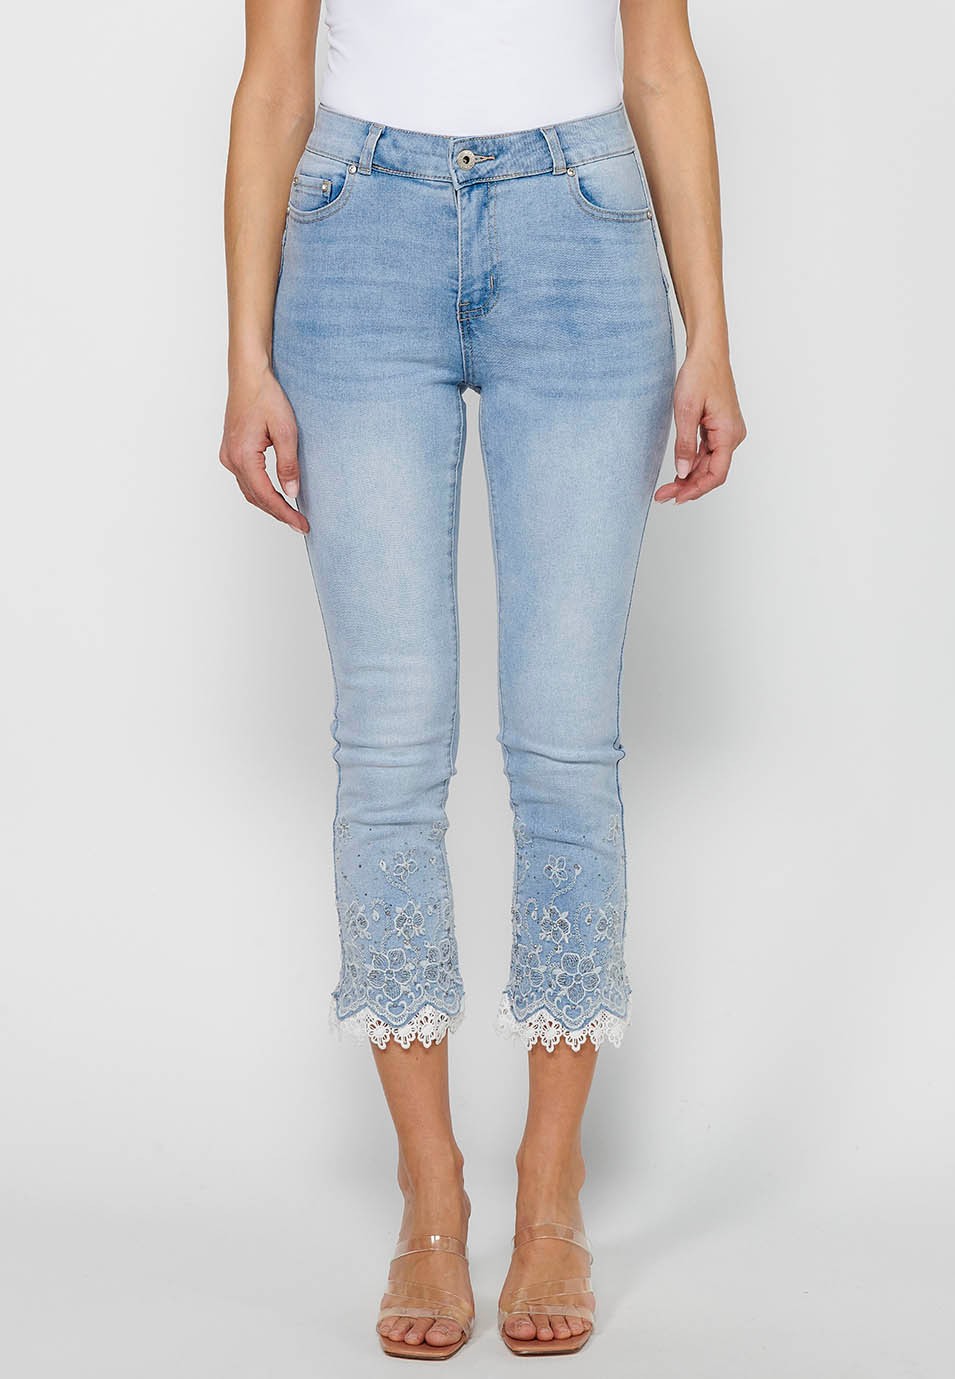 Pantalon long en jean slim avec fermeture éclair sur le devant et détails brodés de fleurs bleu clair pour femme 1